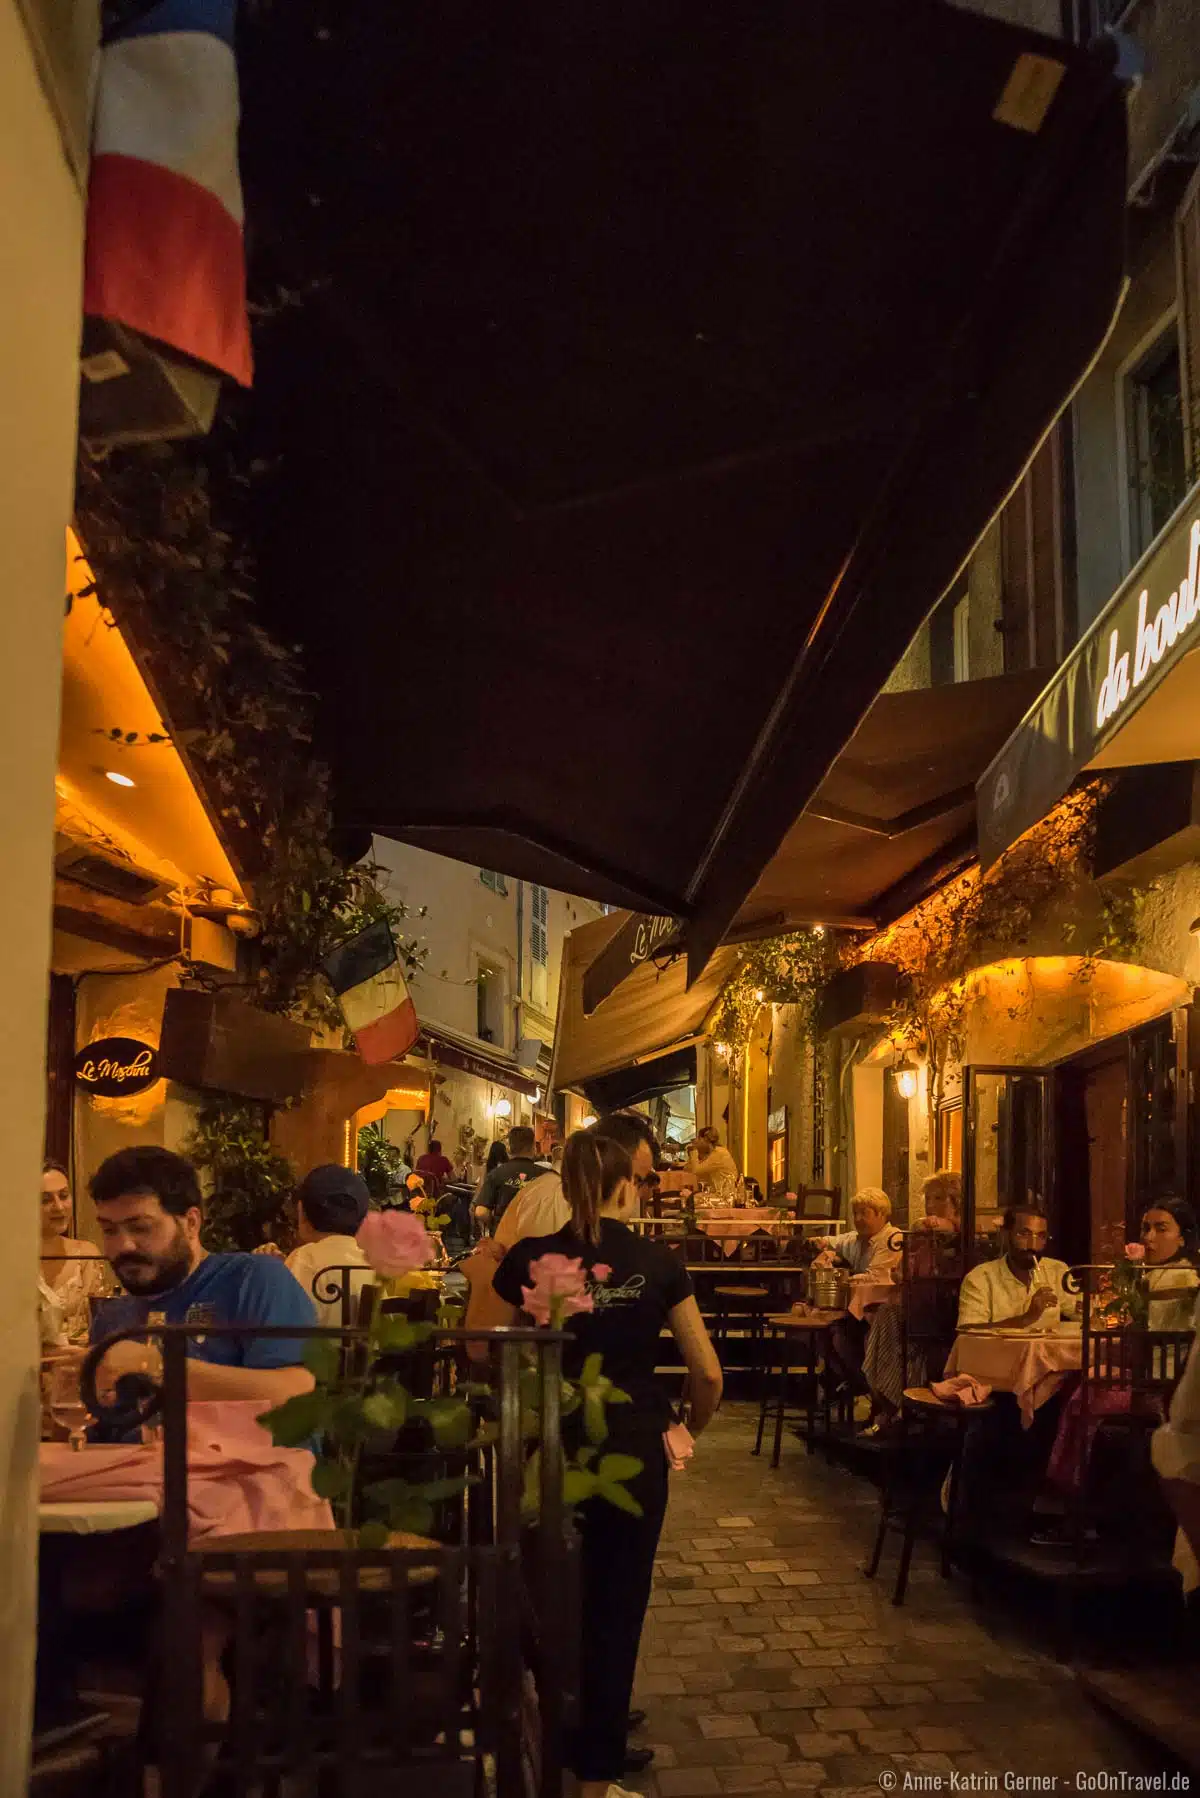 Gemütliche Atmosphäre beim Abendessen in den Gassen der Altstadt von Cannes